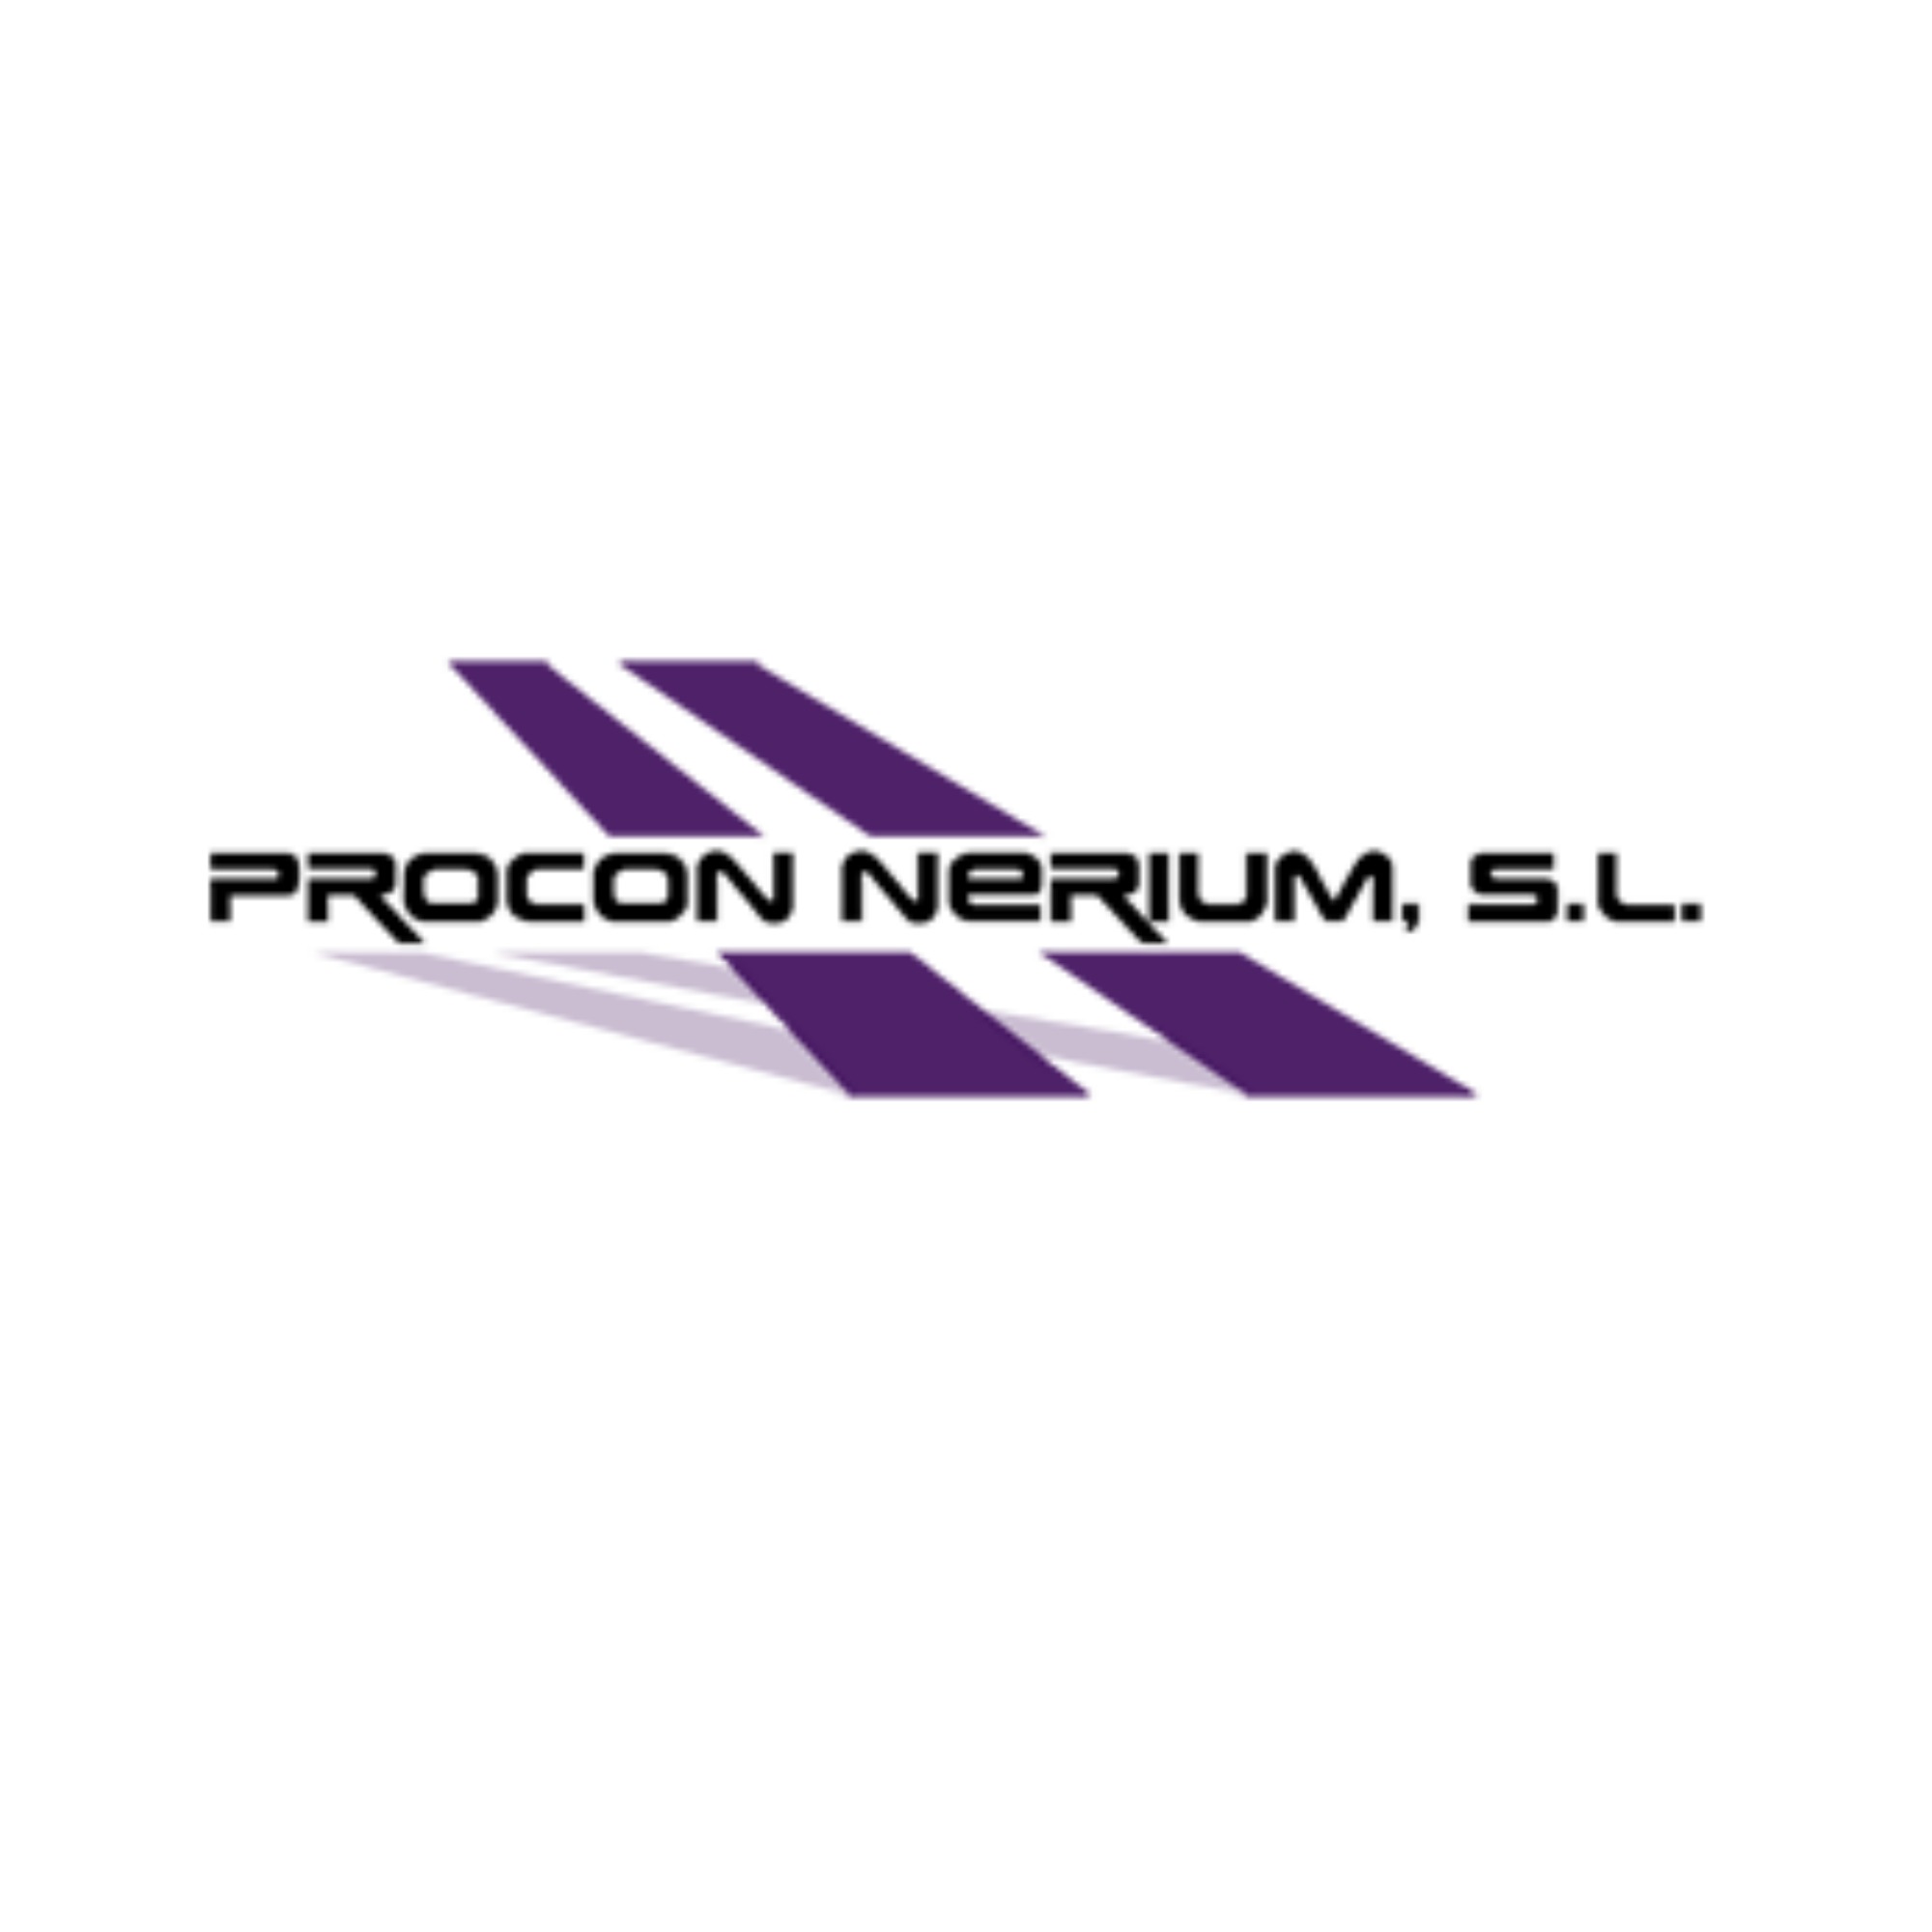 Procon Neriun S.L.